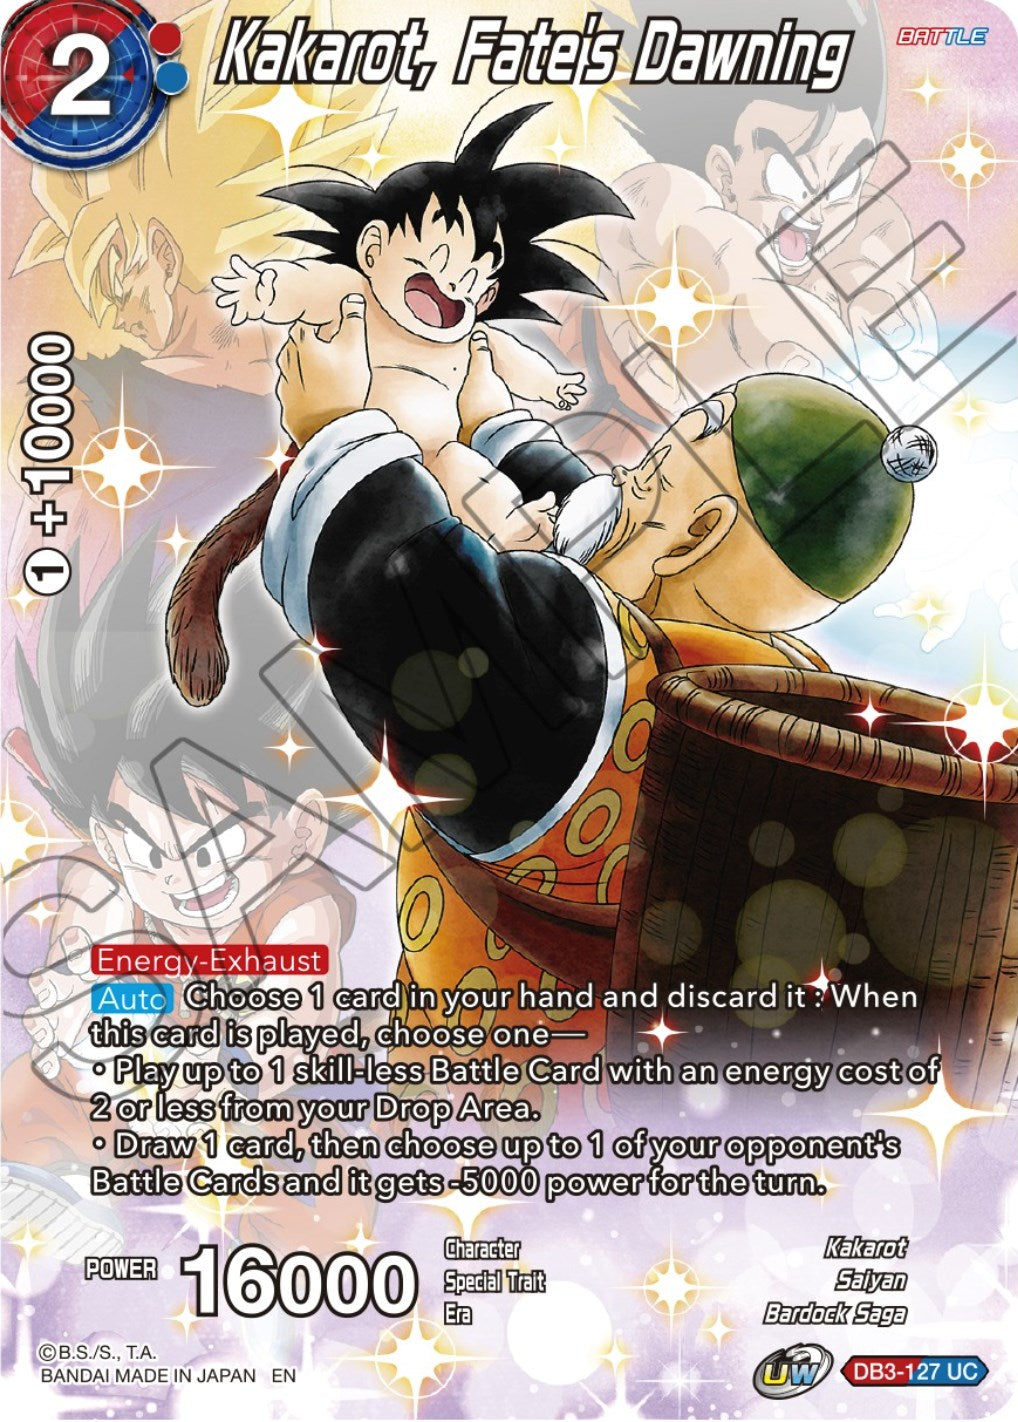 Kakarot, Fate's Dawning (DB3-127) [Theme Selection: History of Son Goku] | Total Play